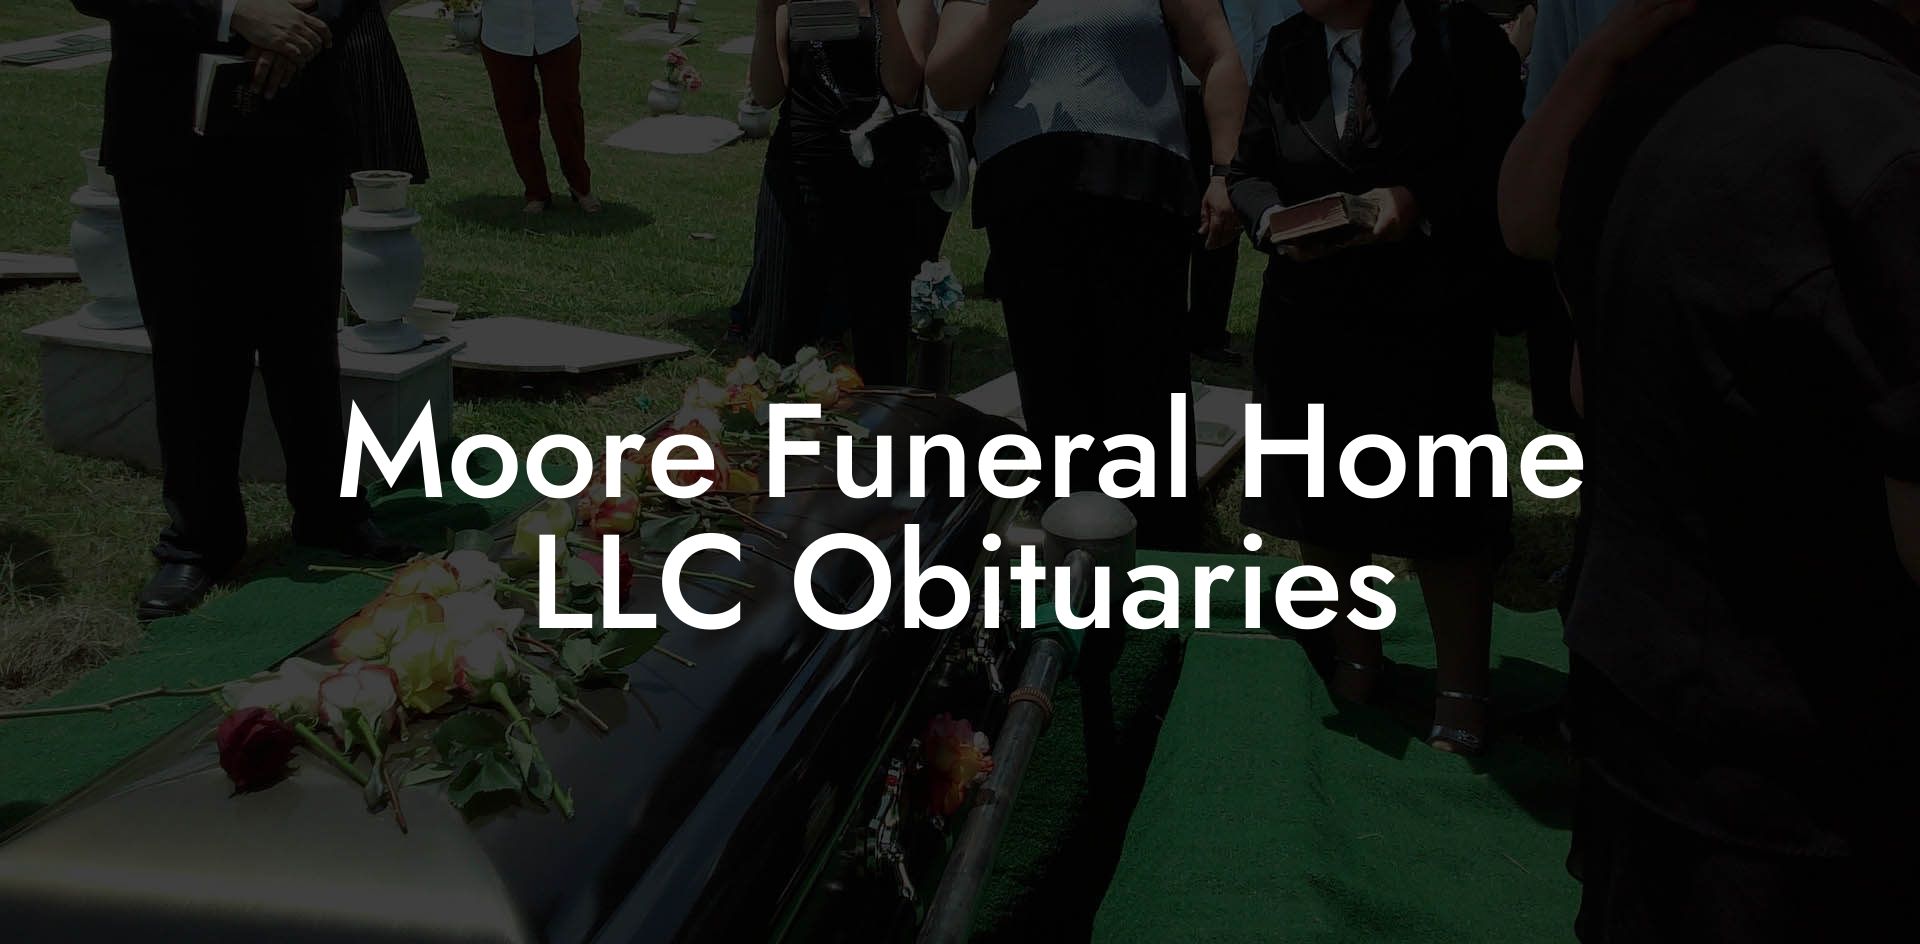 Moore Funeral Home LLC Obituaries